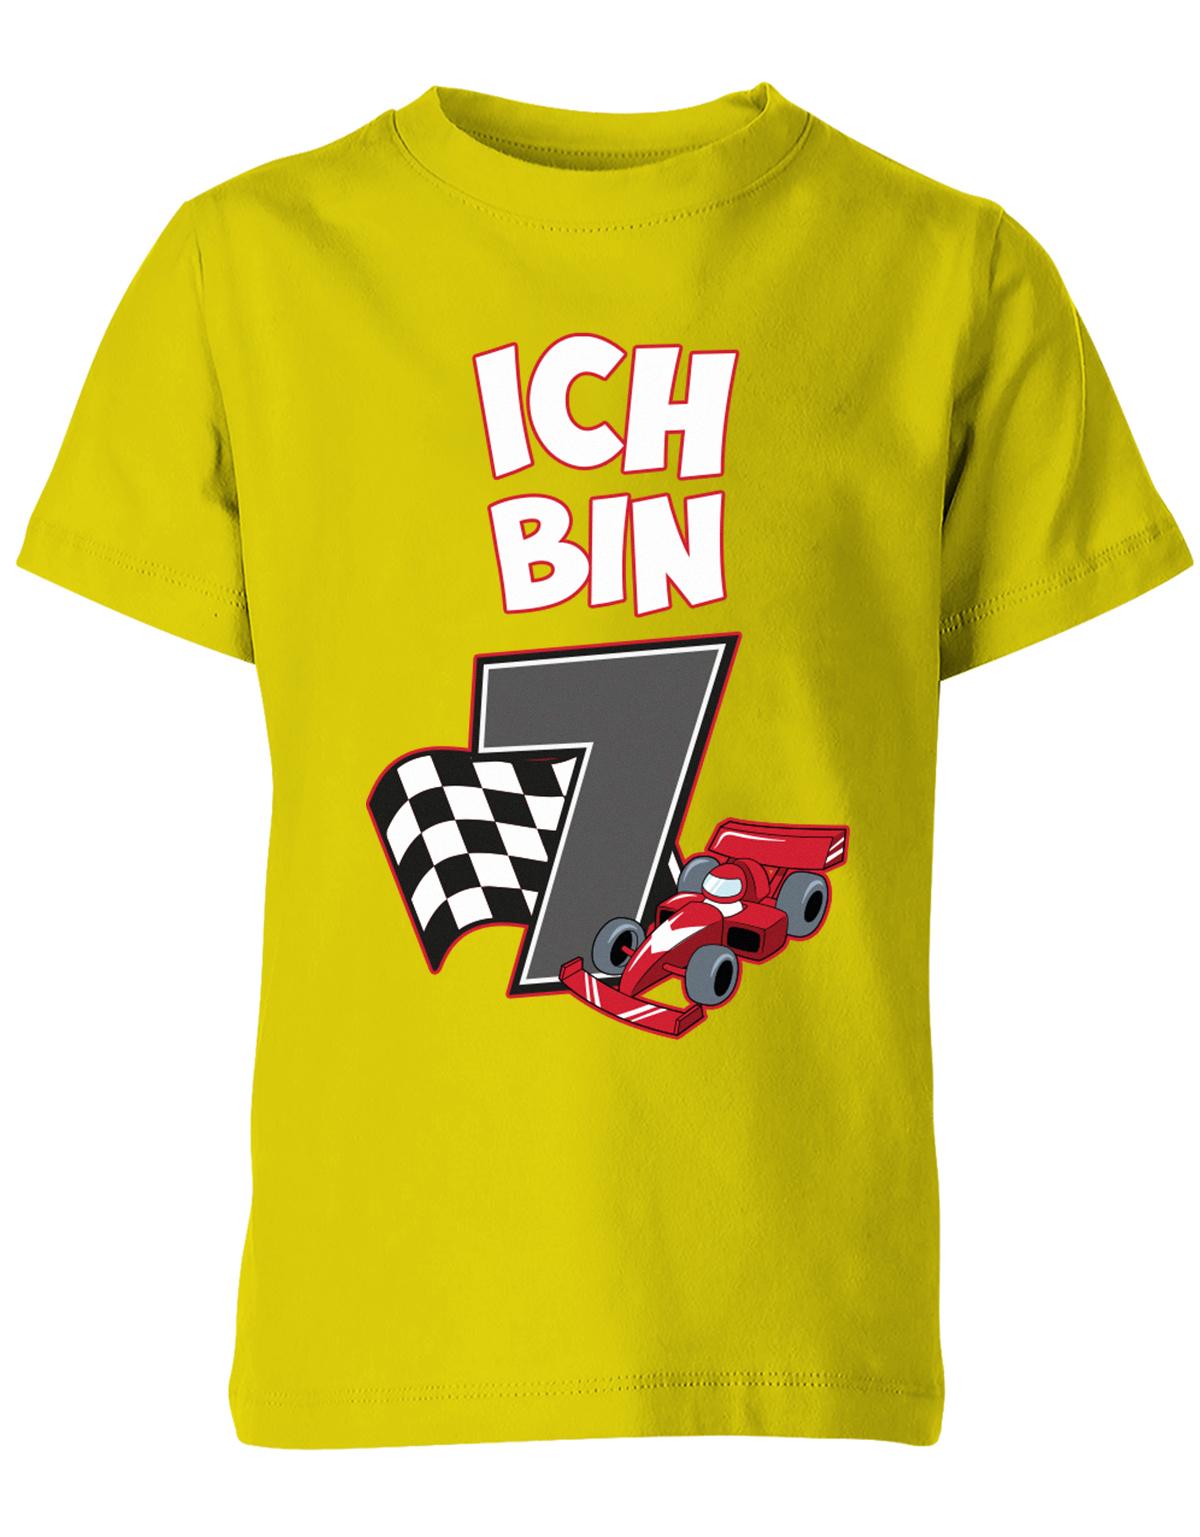 ich-bin-7-autorennen-rennwagen-geburtstag-rennfahrer-kinder-shirt-gelb